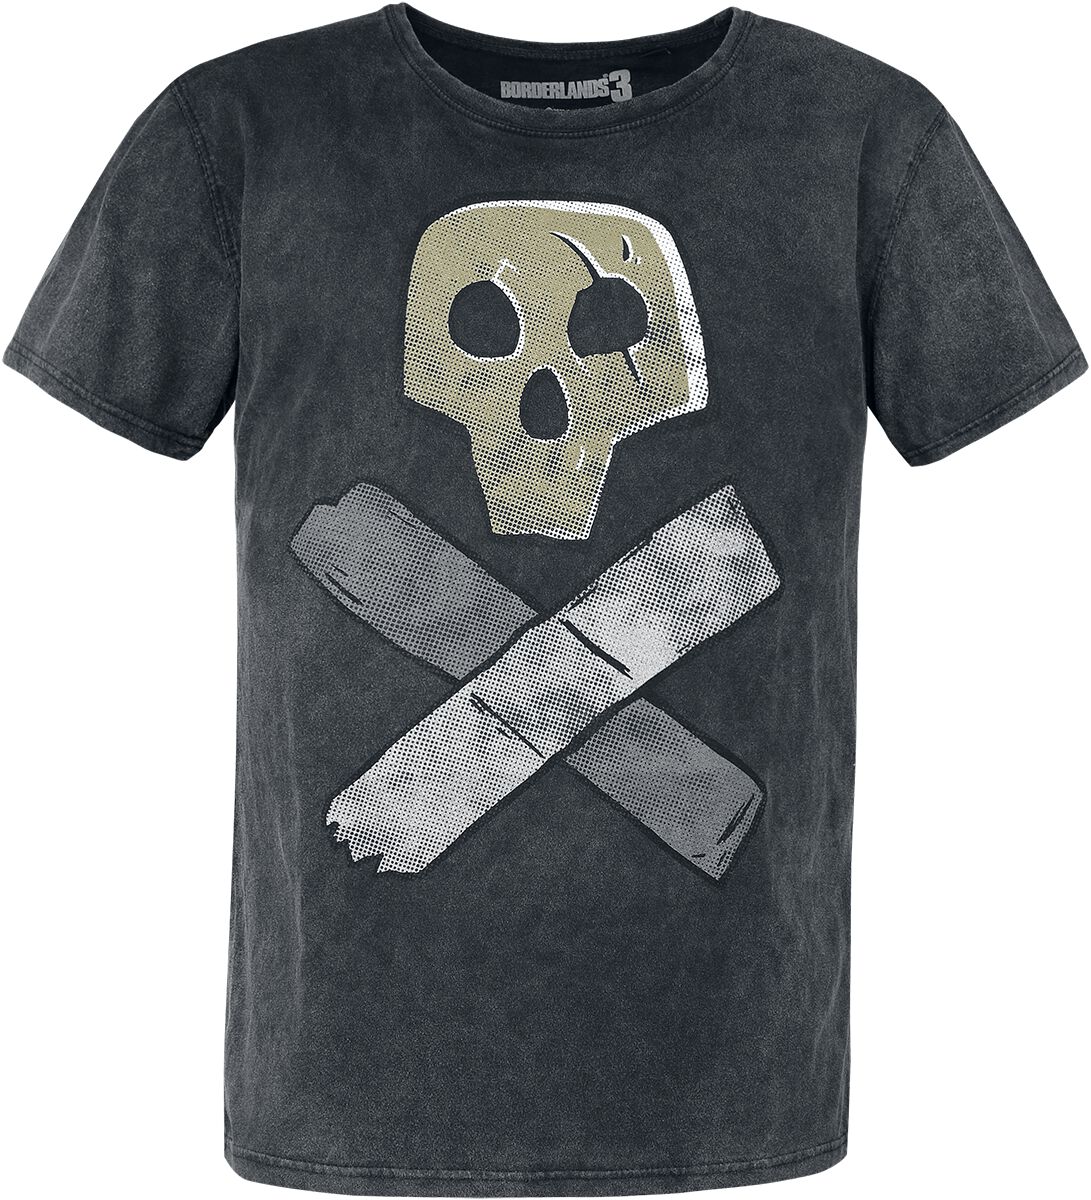 Borderlands 3 - Skull T-Shirt grau in XL